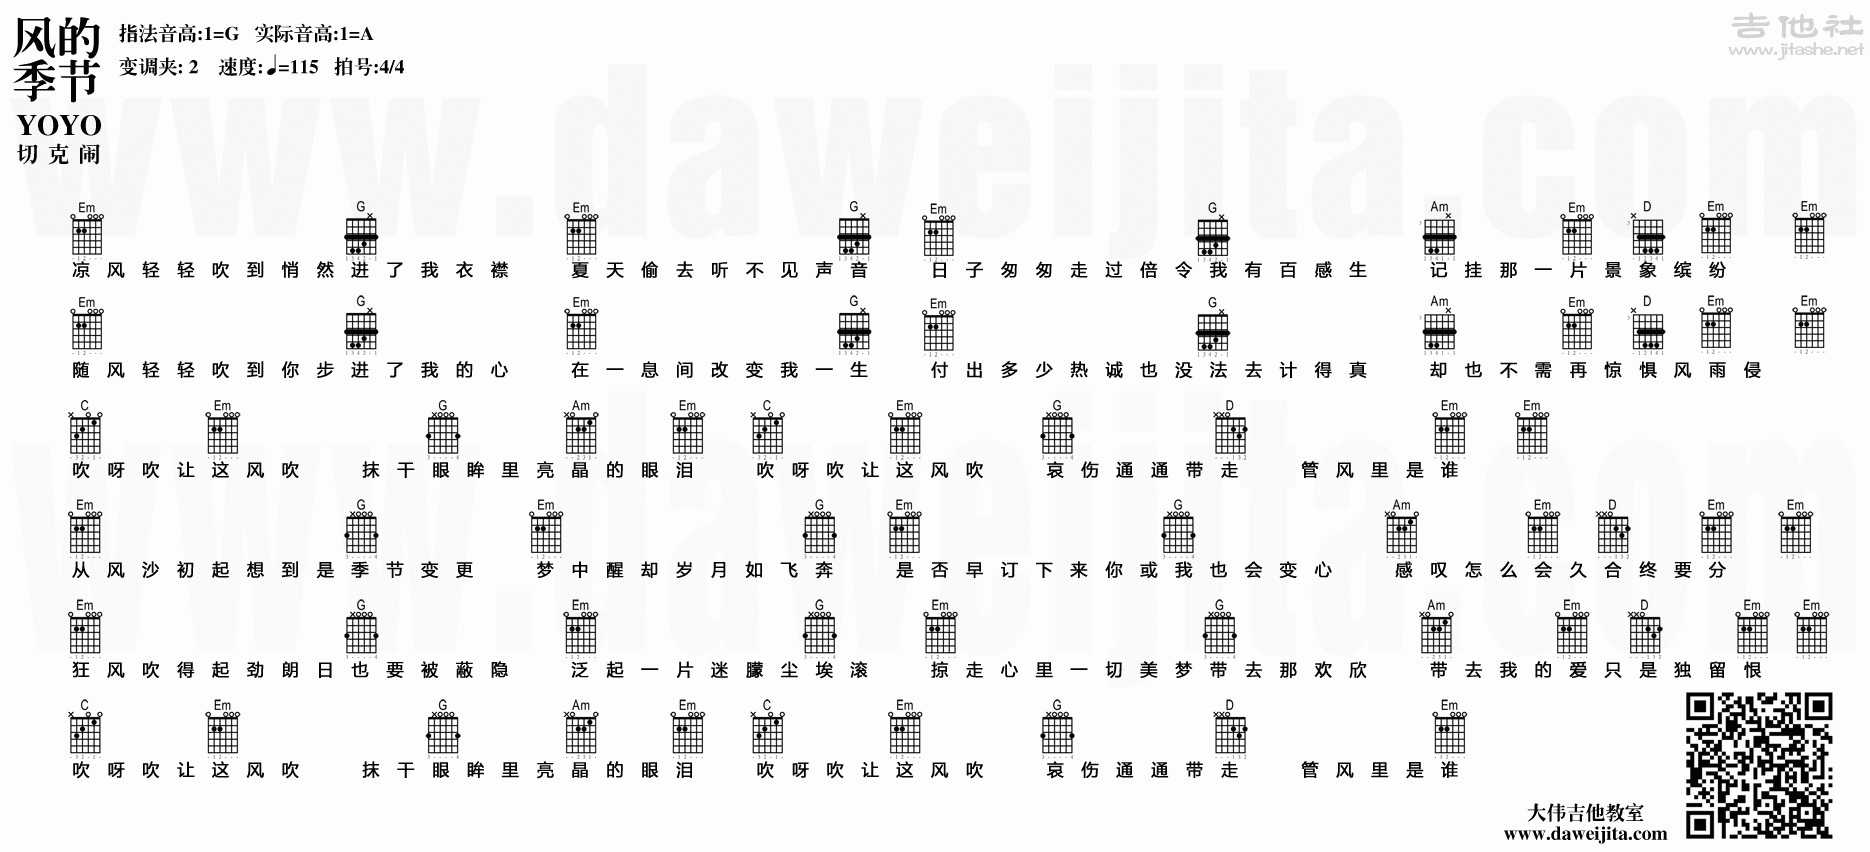 风的季节(YOYO吉他教学 S3-01)吉他谱(图片谱,大伟吉他,弹唱,教学)_徐小凤_风的季节.gif